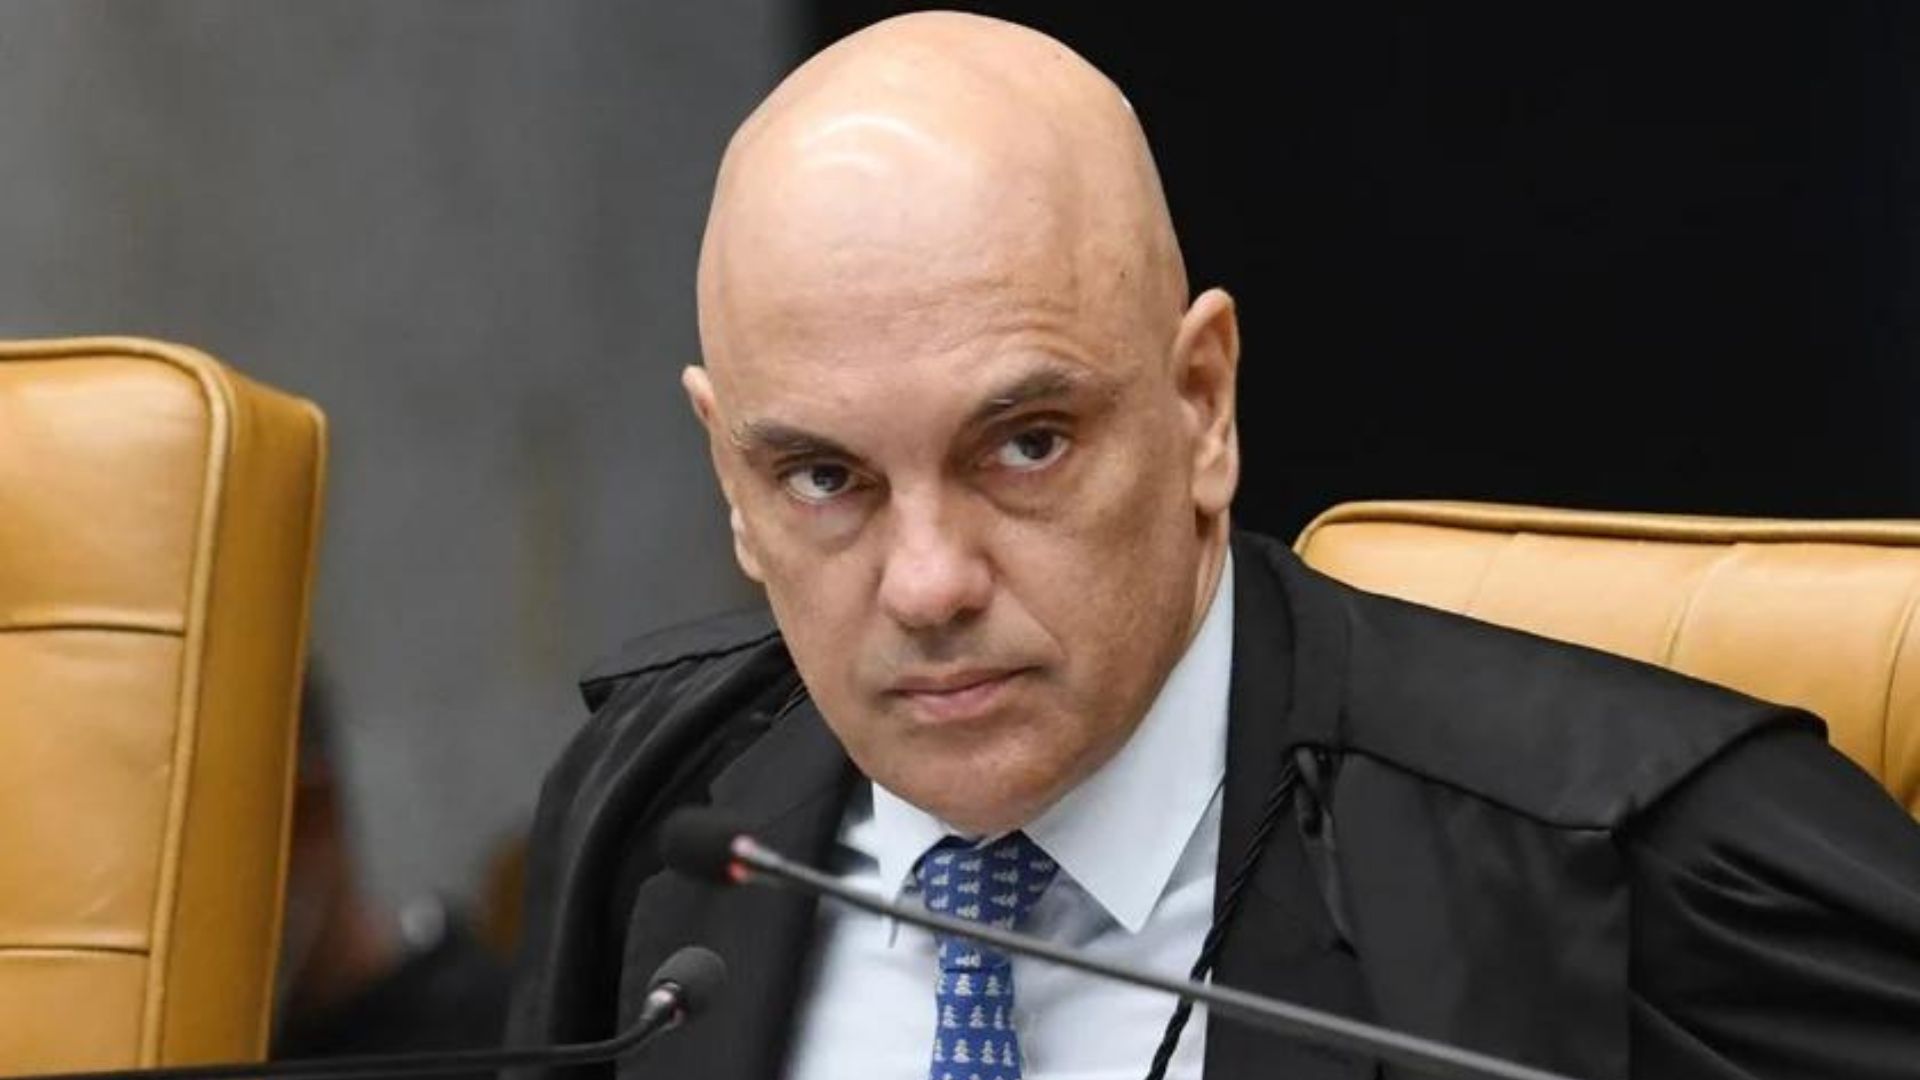 Moraes cassa sentença que apontou 'erro' seu e manda CNJ investigar juiz que 'desafiou' STF